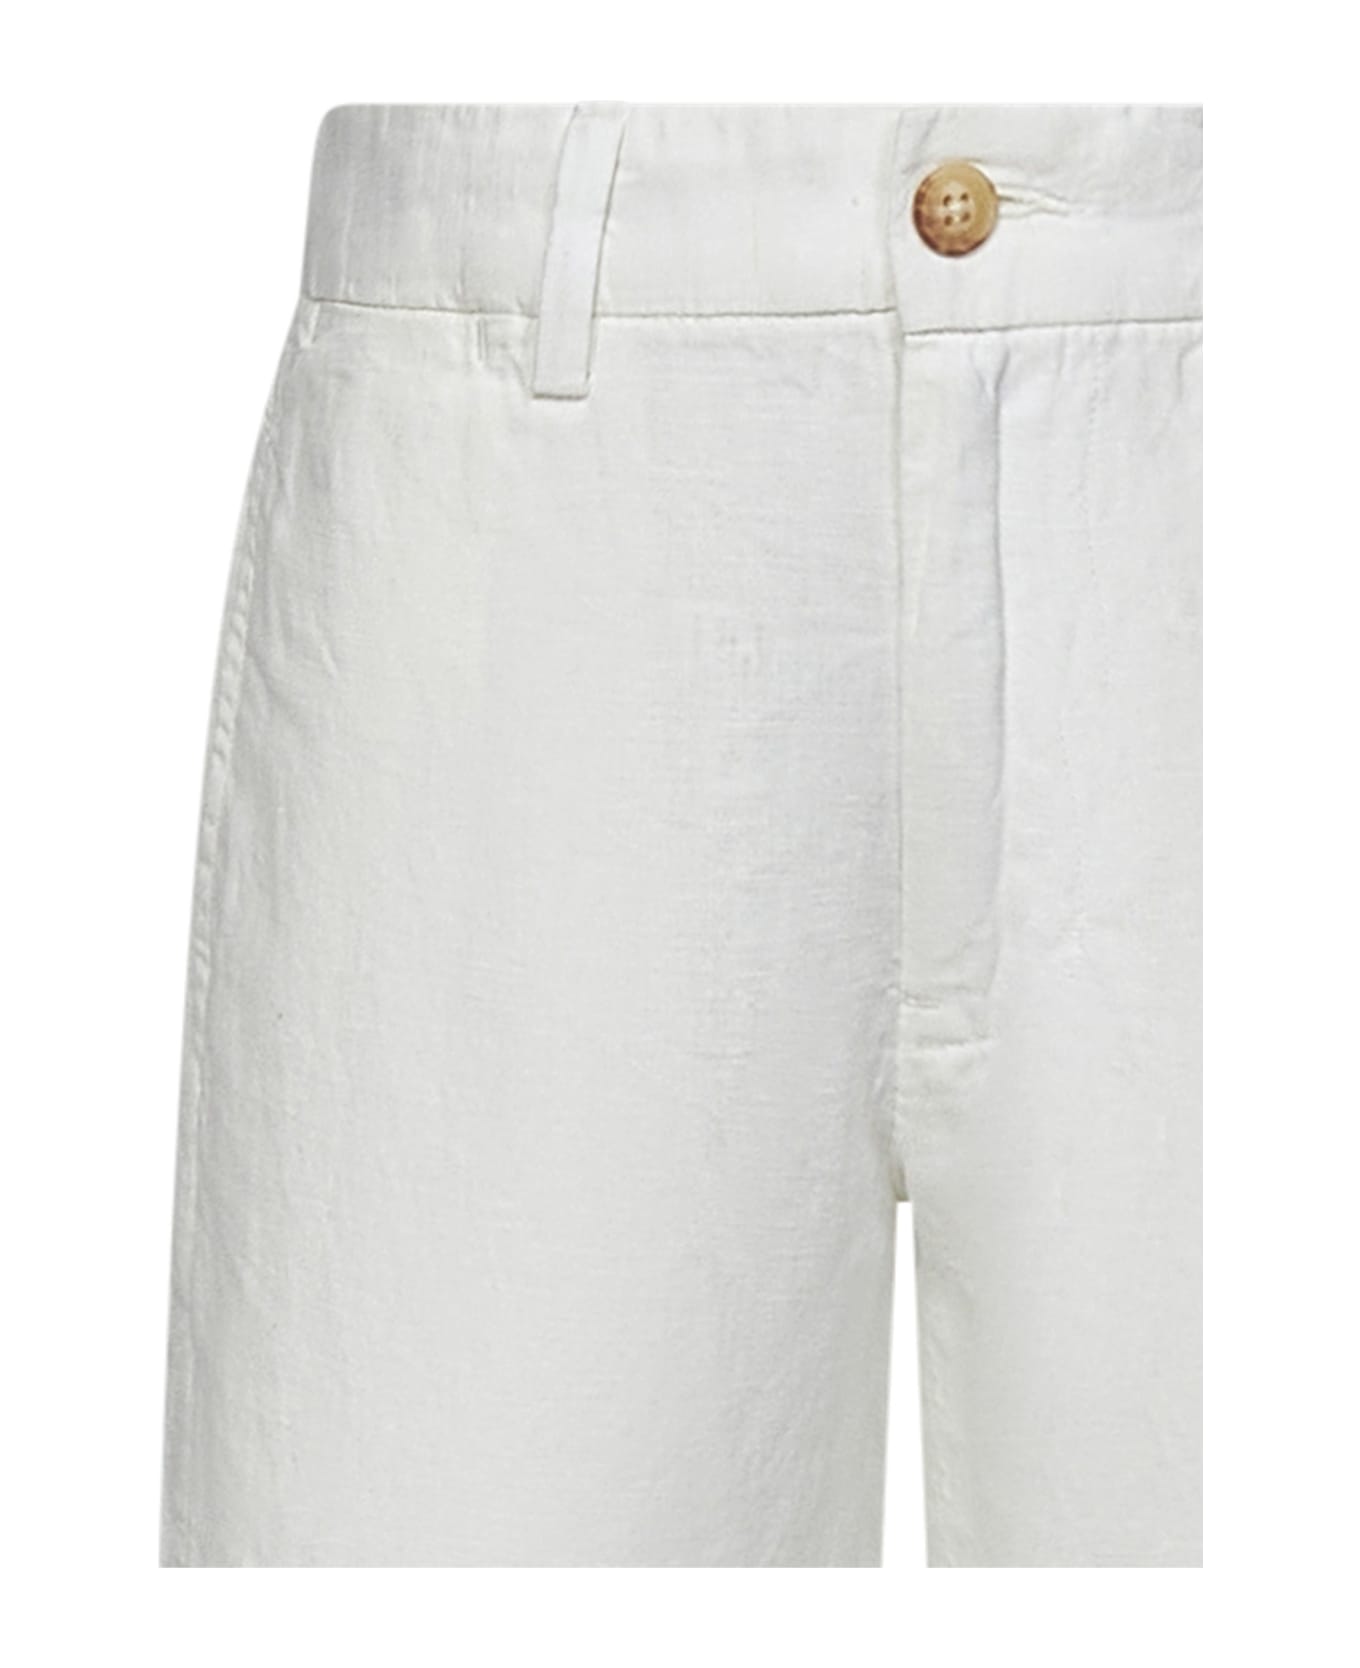 Polo Ralph Lauren Kids Shorts - White